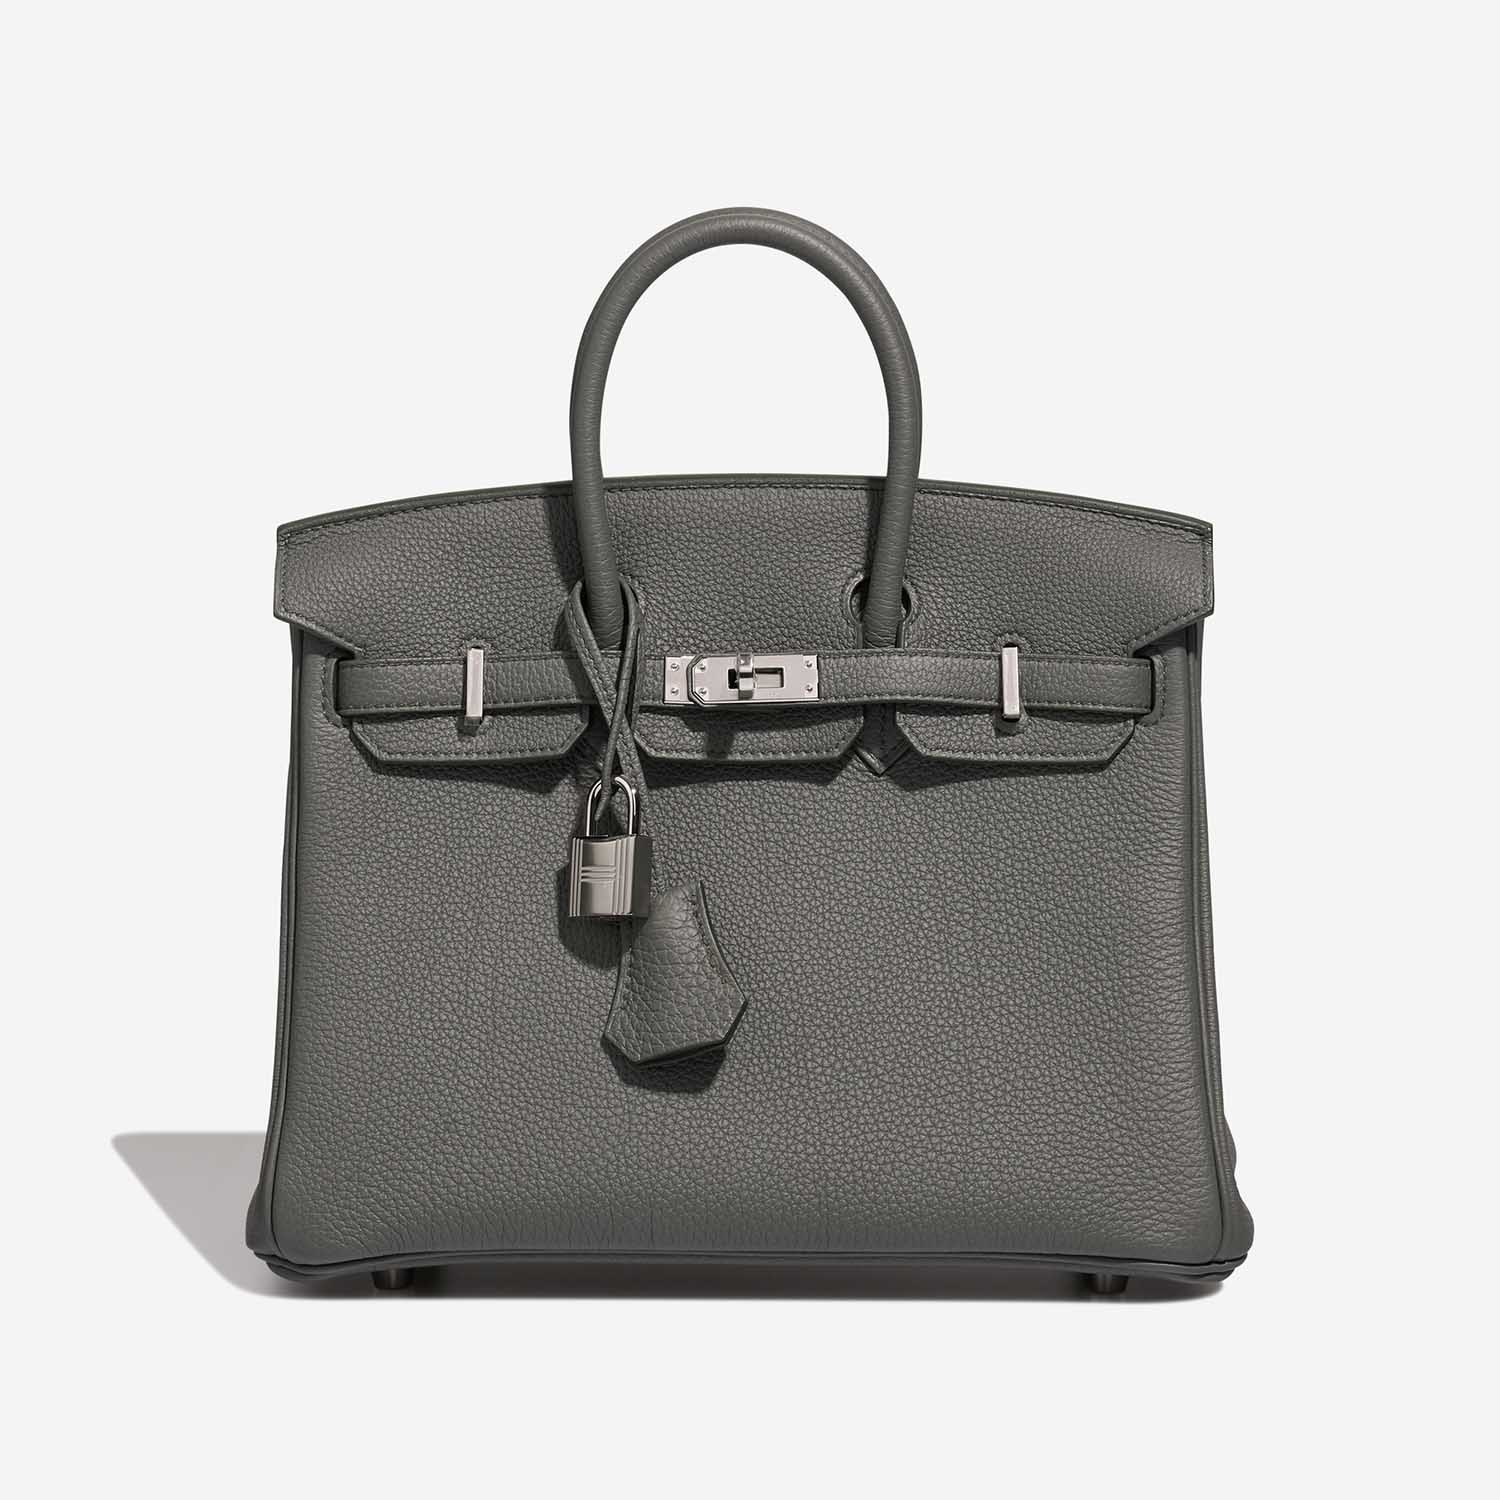 Hermès Birkin 25 VertAmande Front S | Verkaufen Sie Ihre Designer-Tasche auf Saclab.com